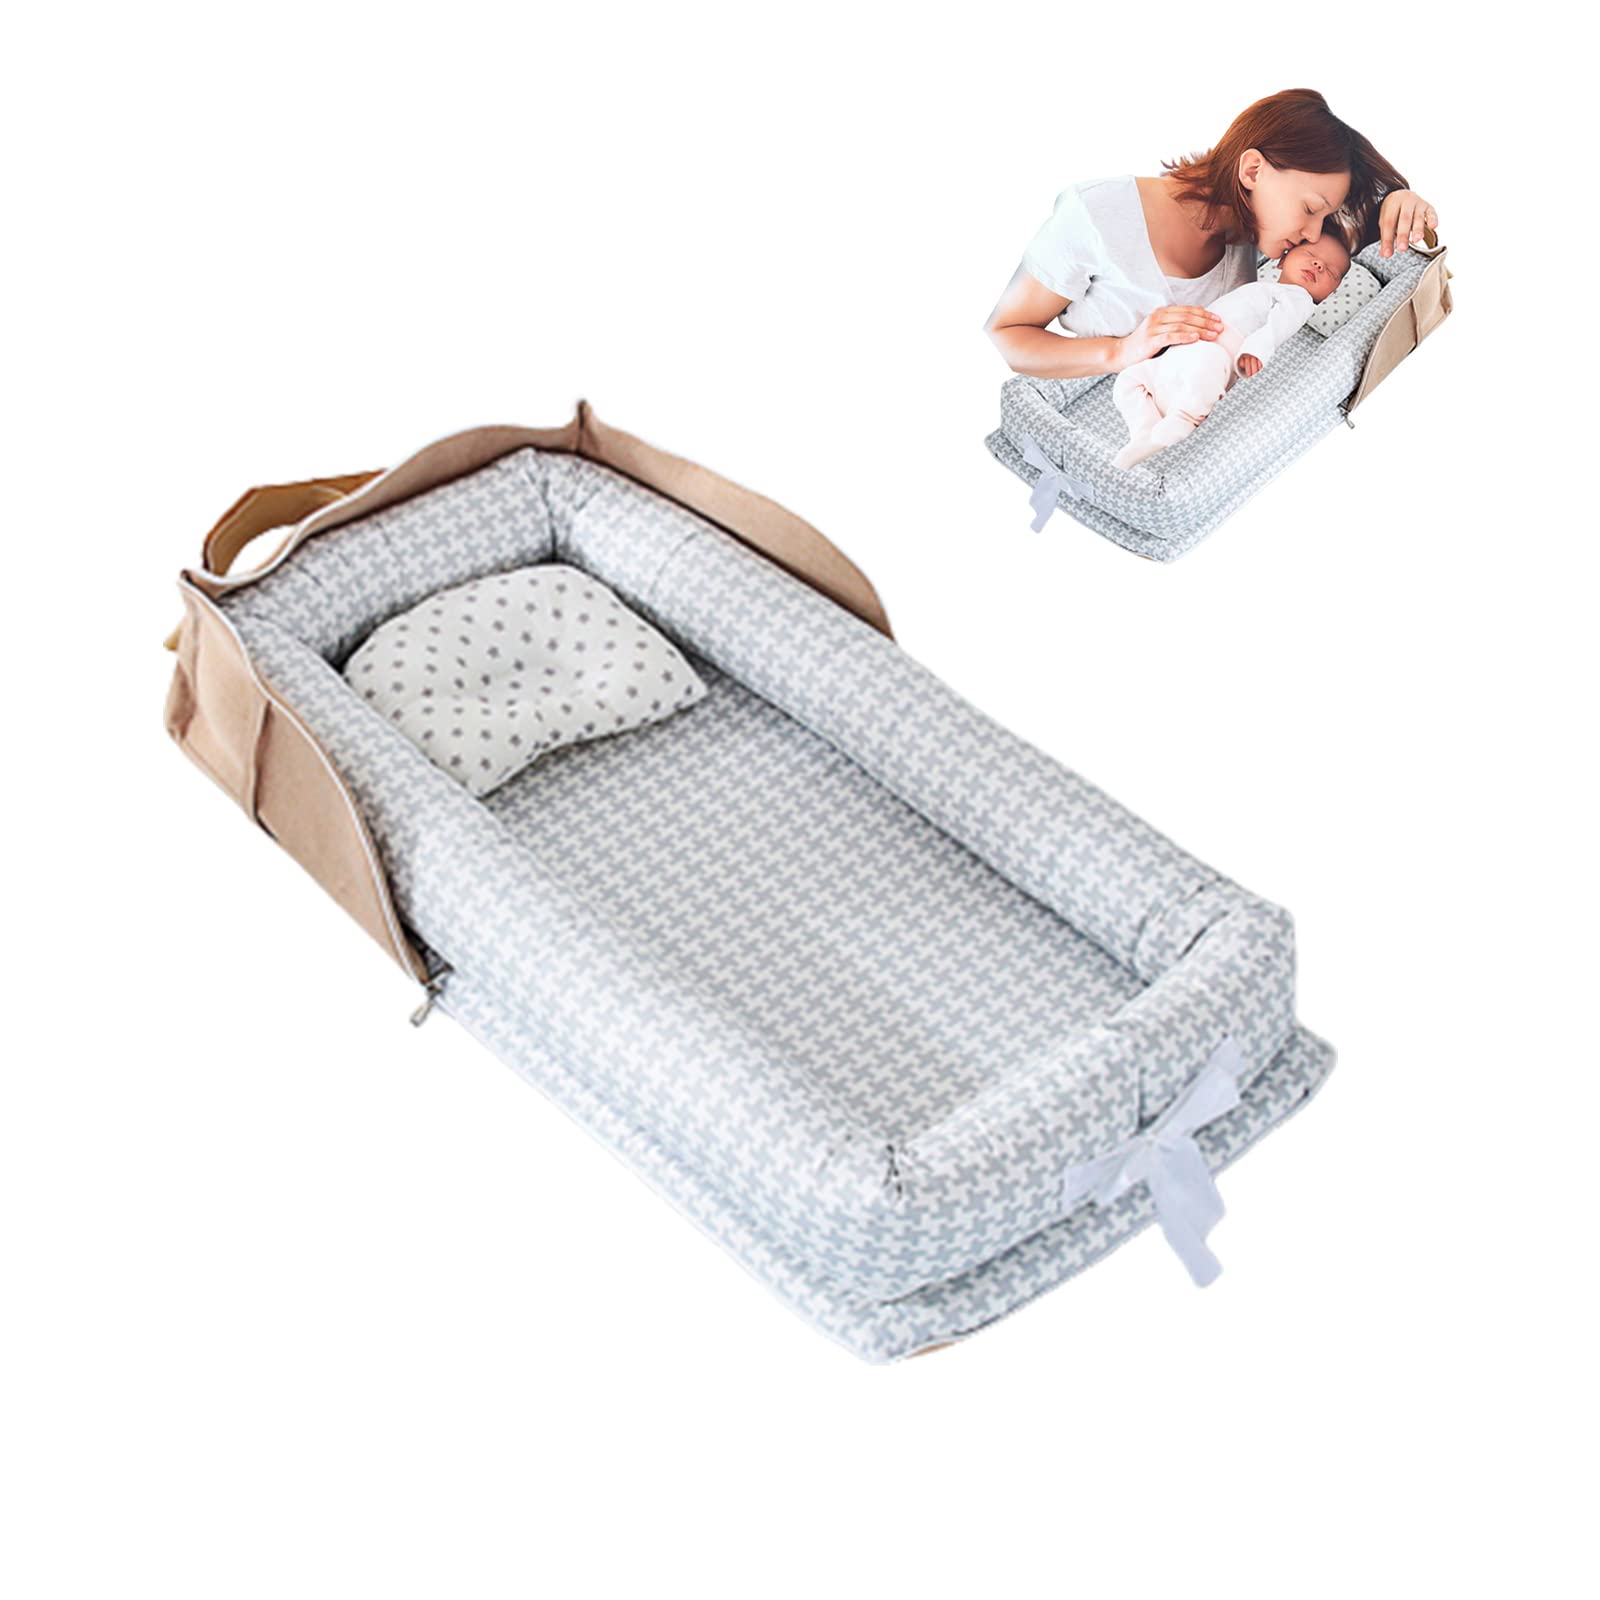 Vohunt - Nido para recién nacido, bolsa portátil de algodón 100% para dormir para bebé en la cama